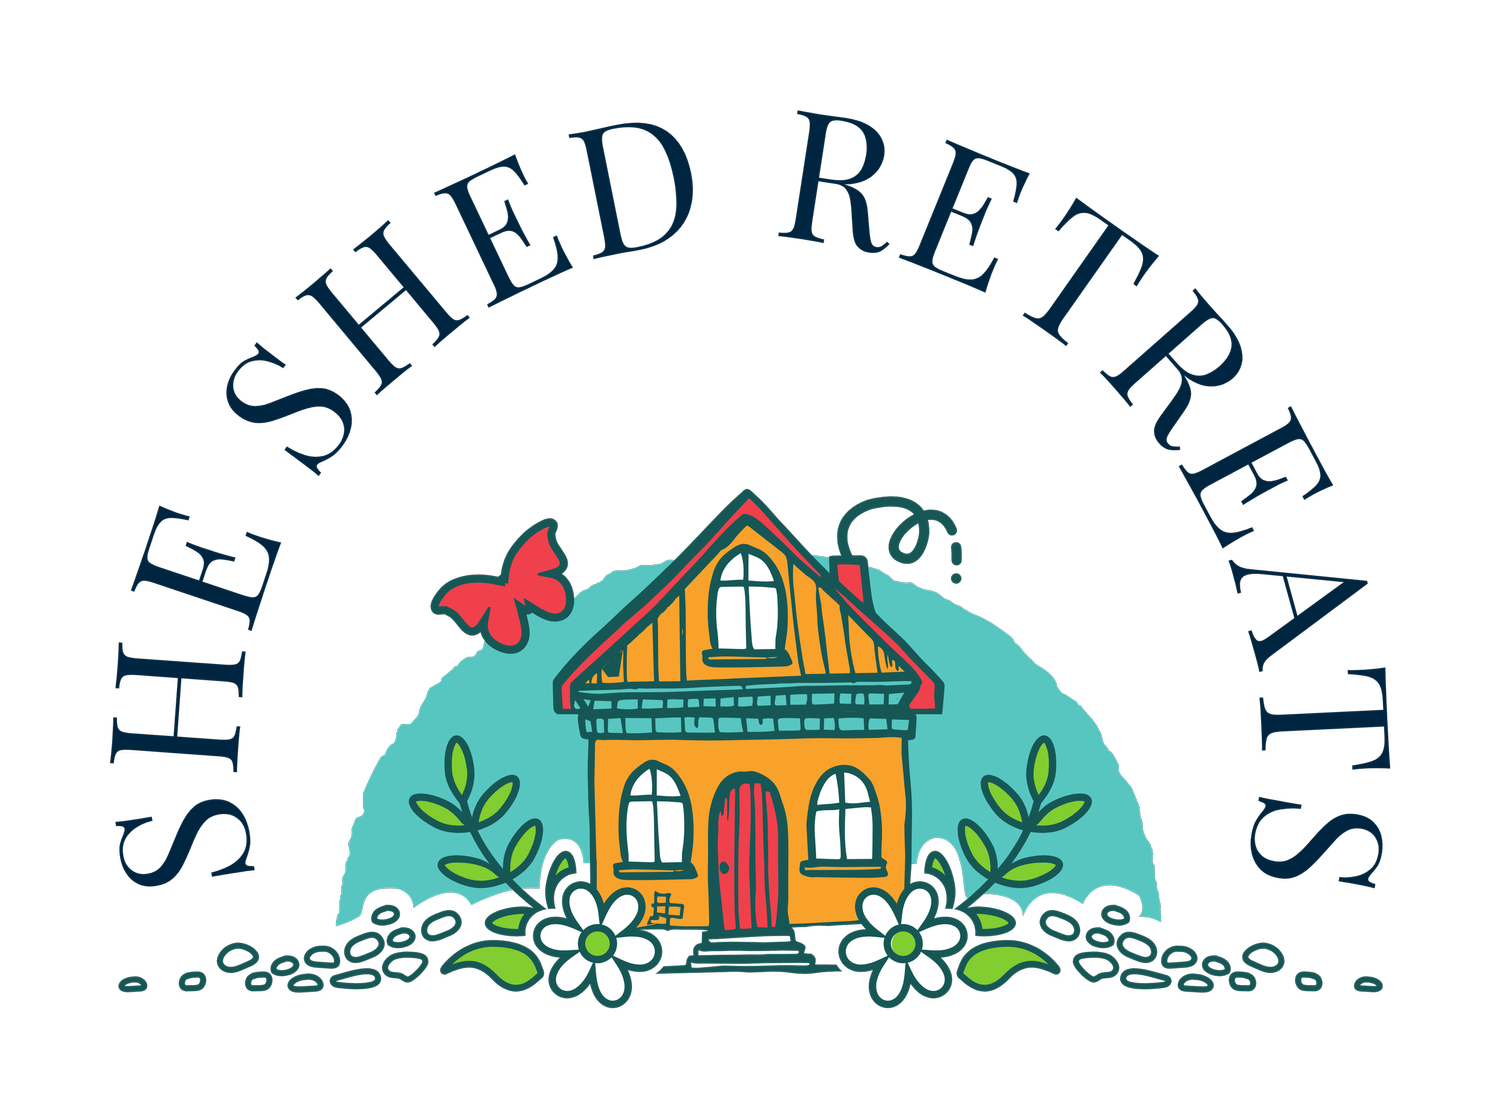 She Shed Retreats